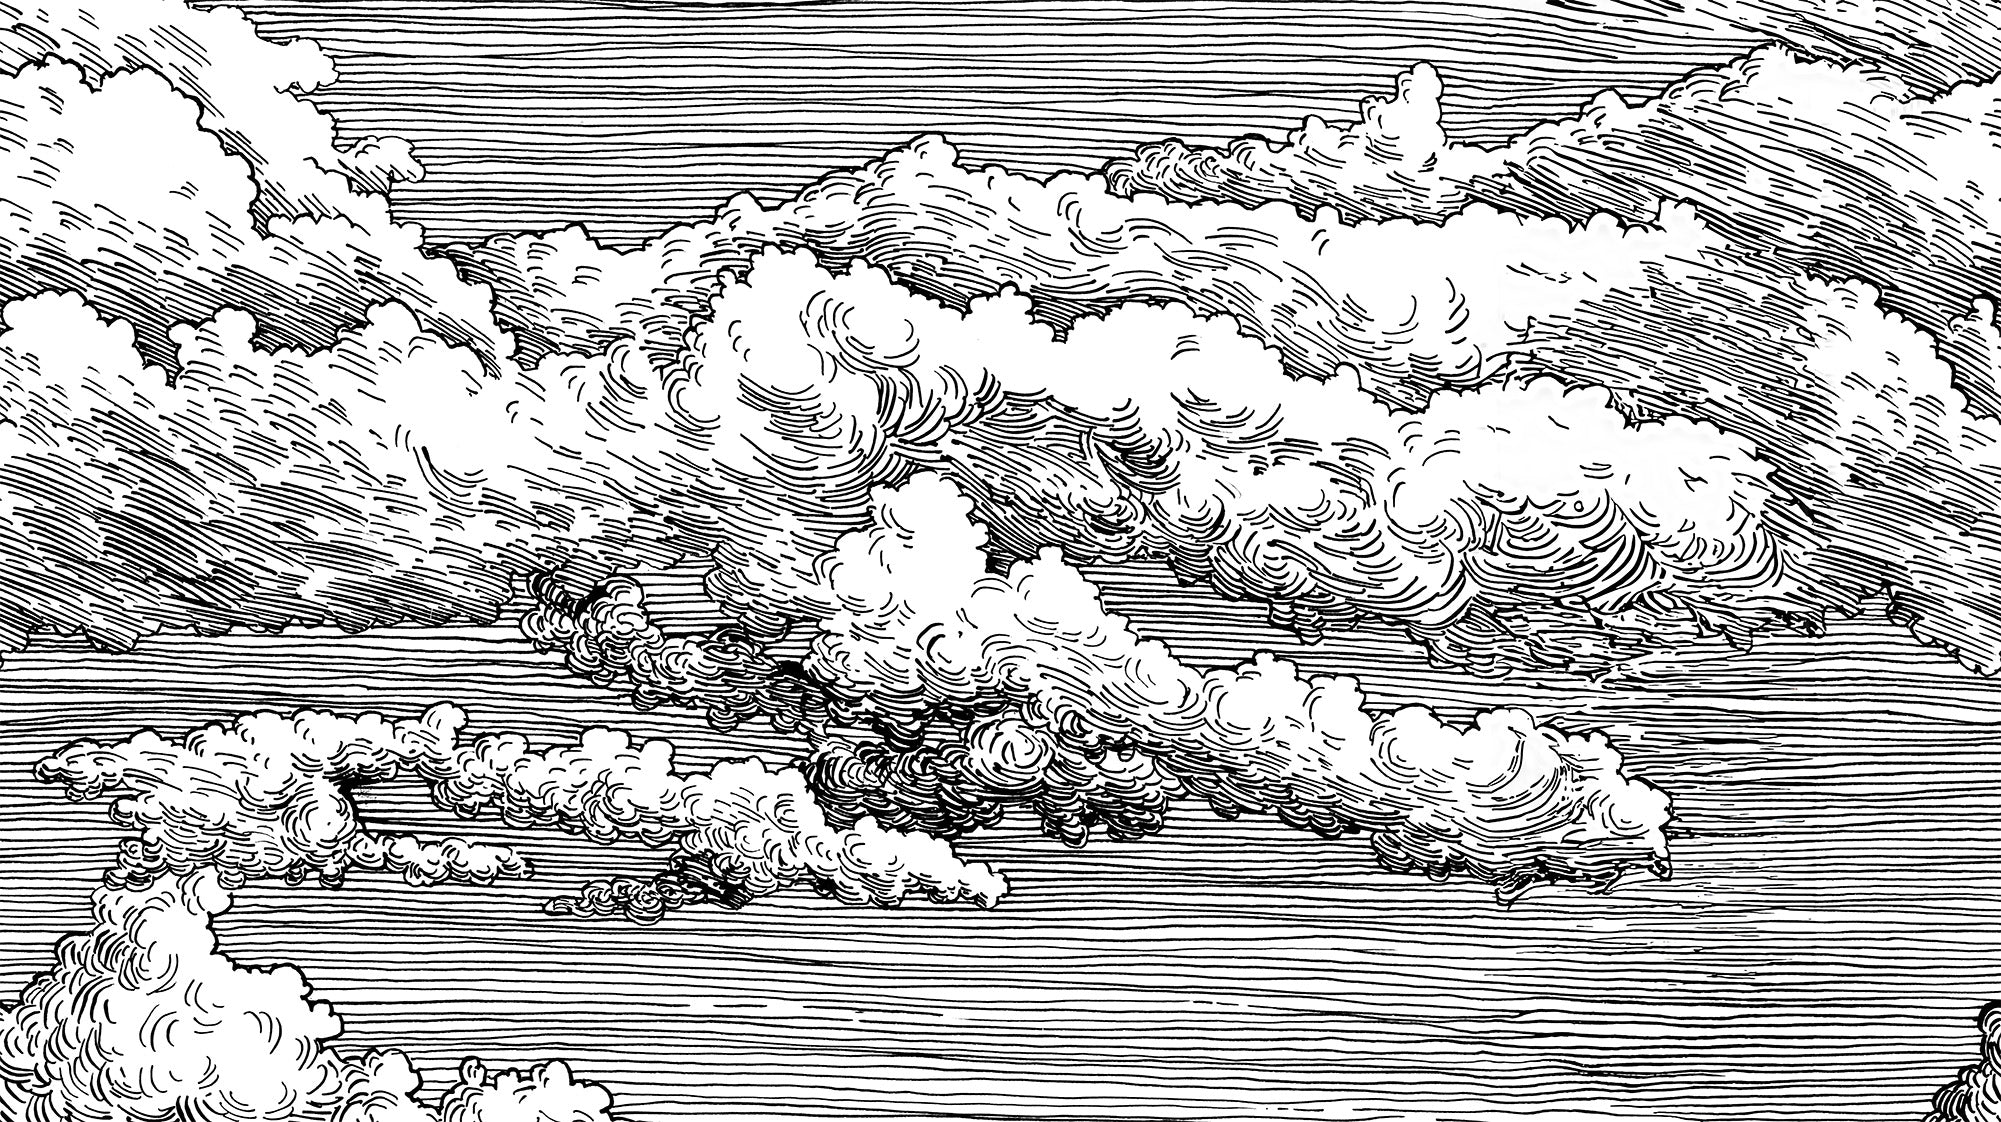 Abut – Fototapete Monochrome Wolken in Schwarz-Weiß mit geätzter Strichzeichnung